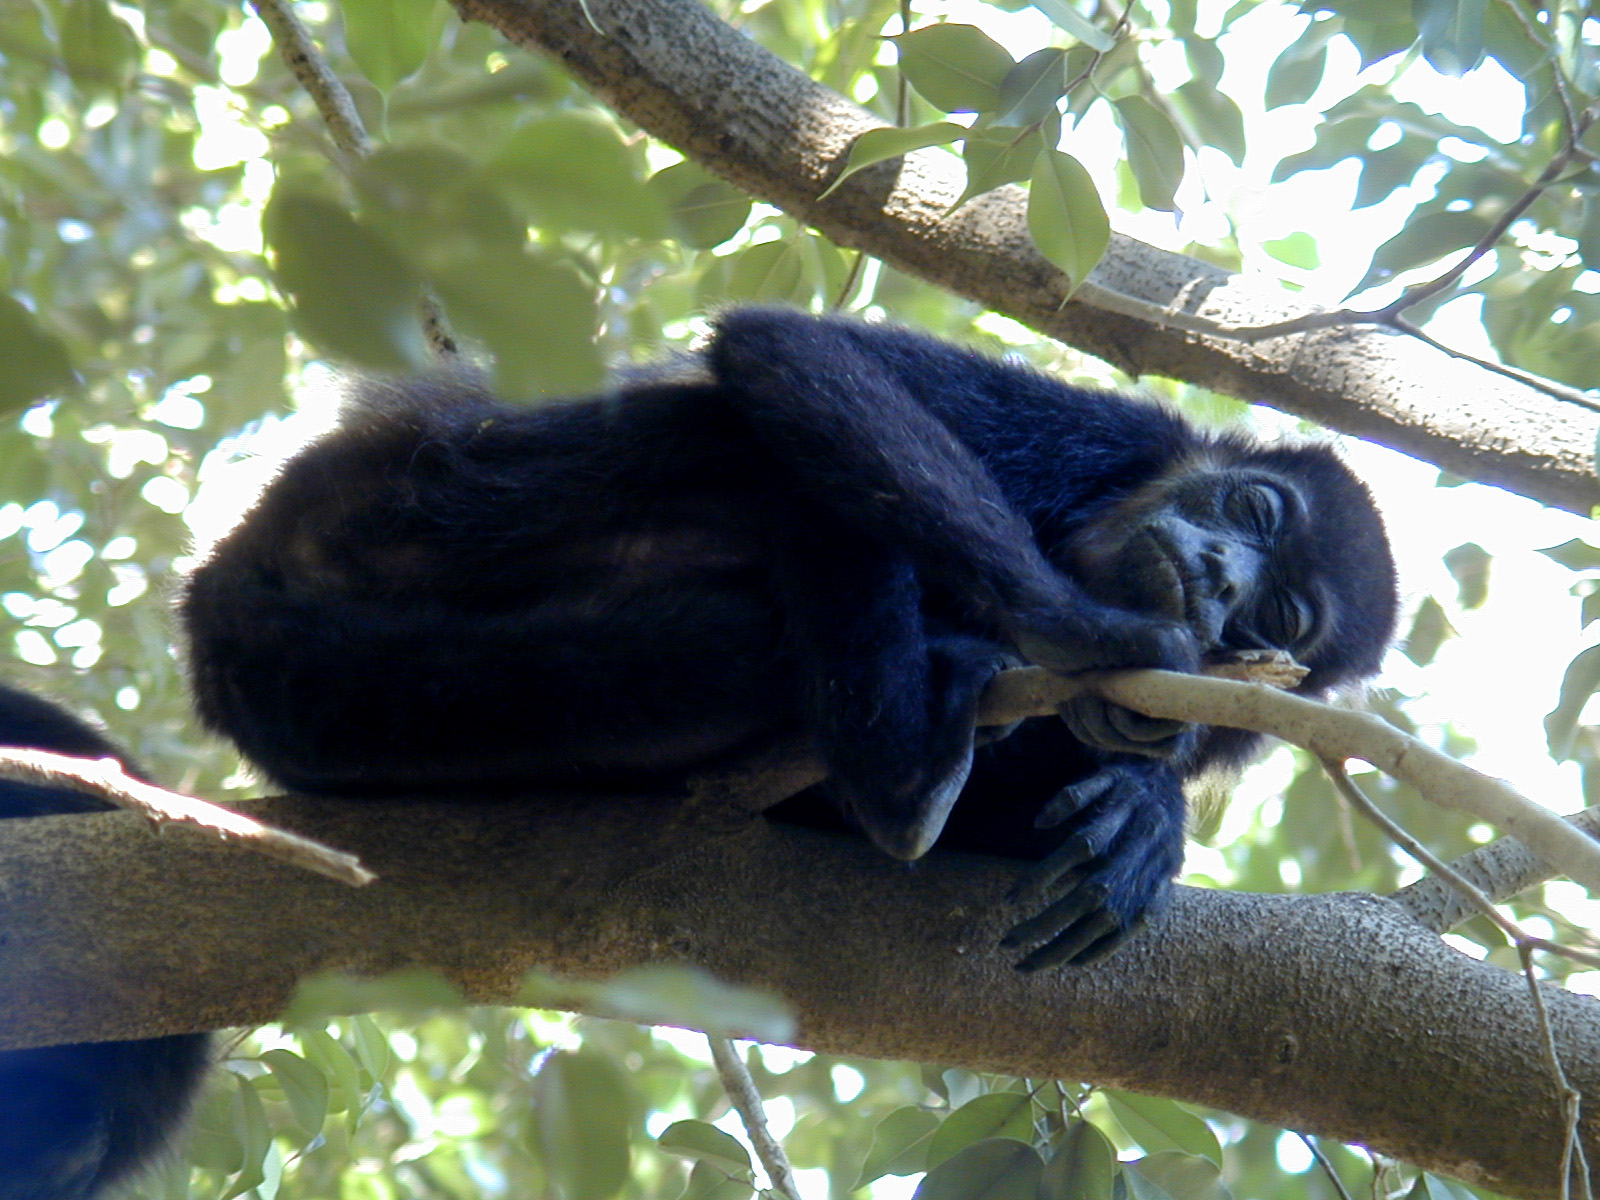 Costa Rica Playa Tamarindo Howler Monkey 773.jpg